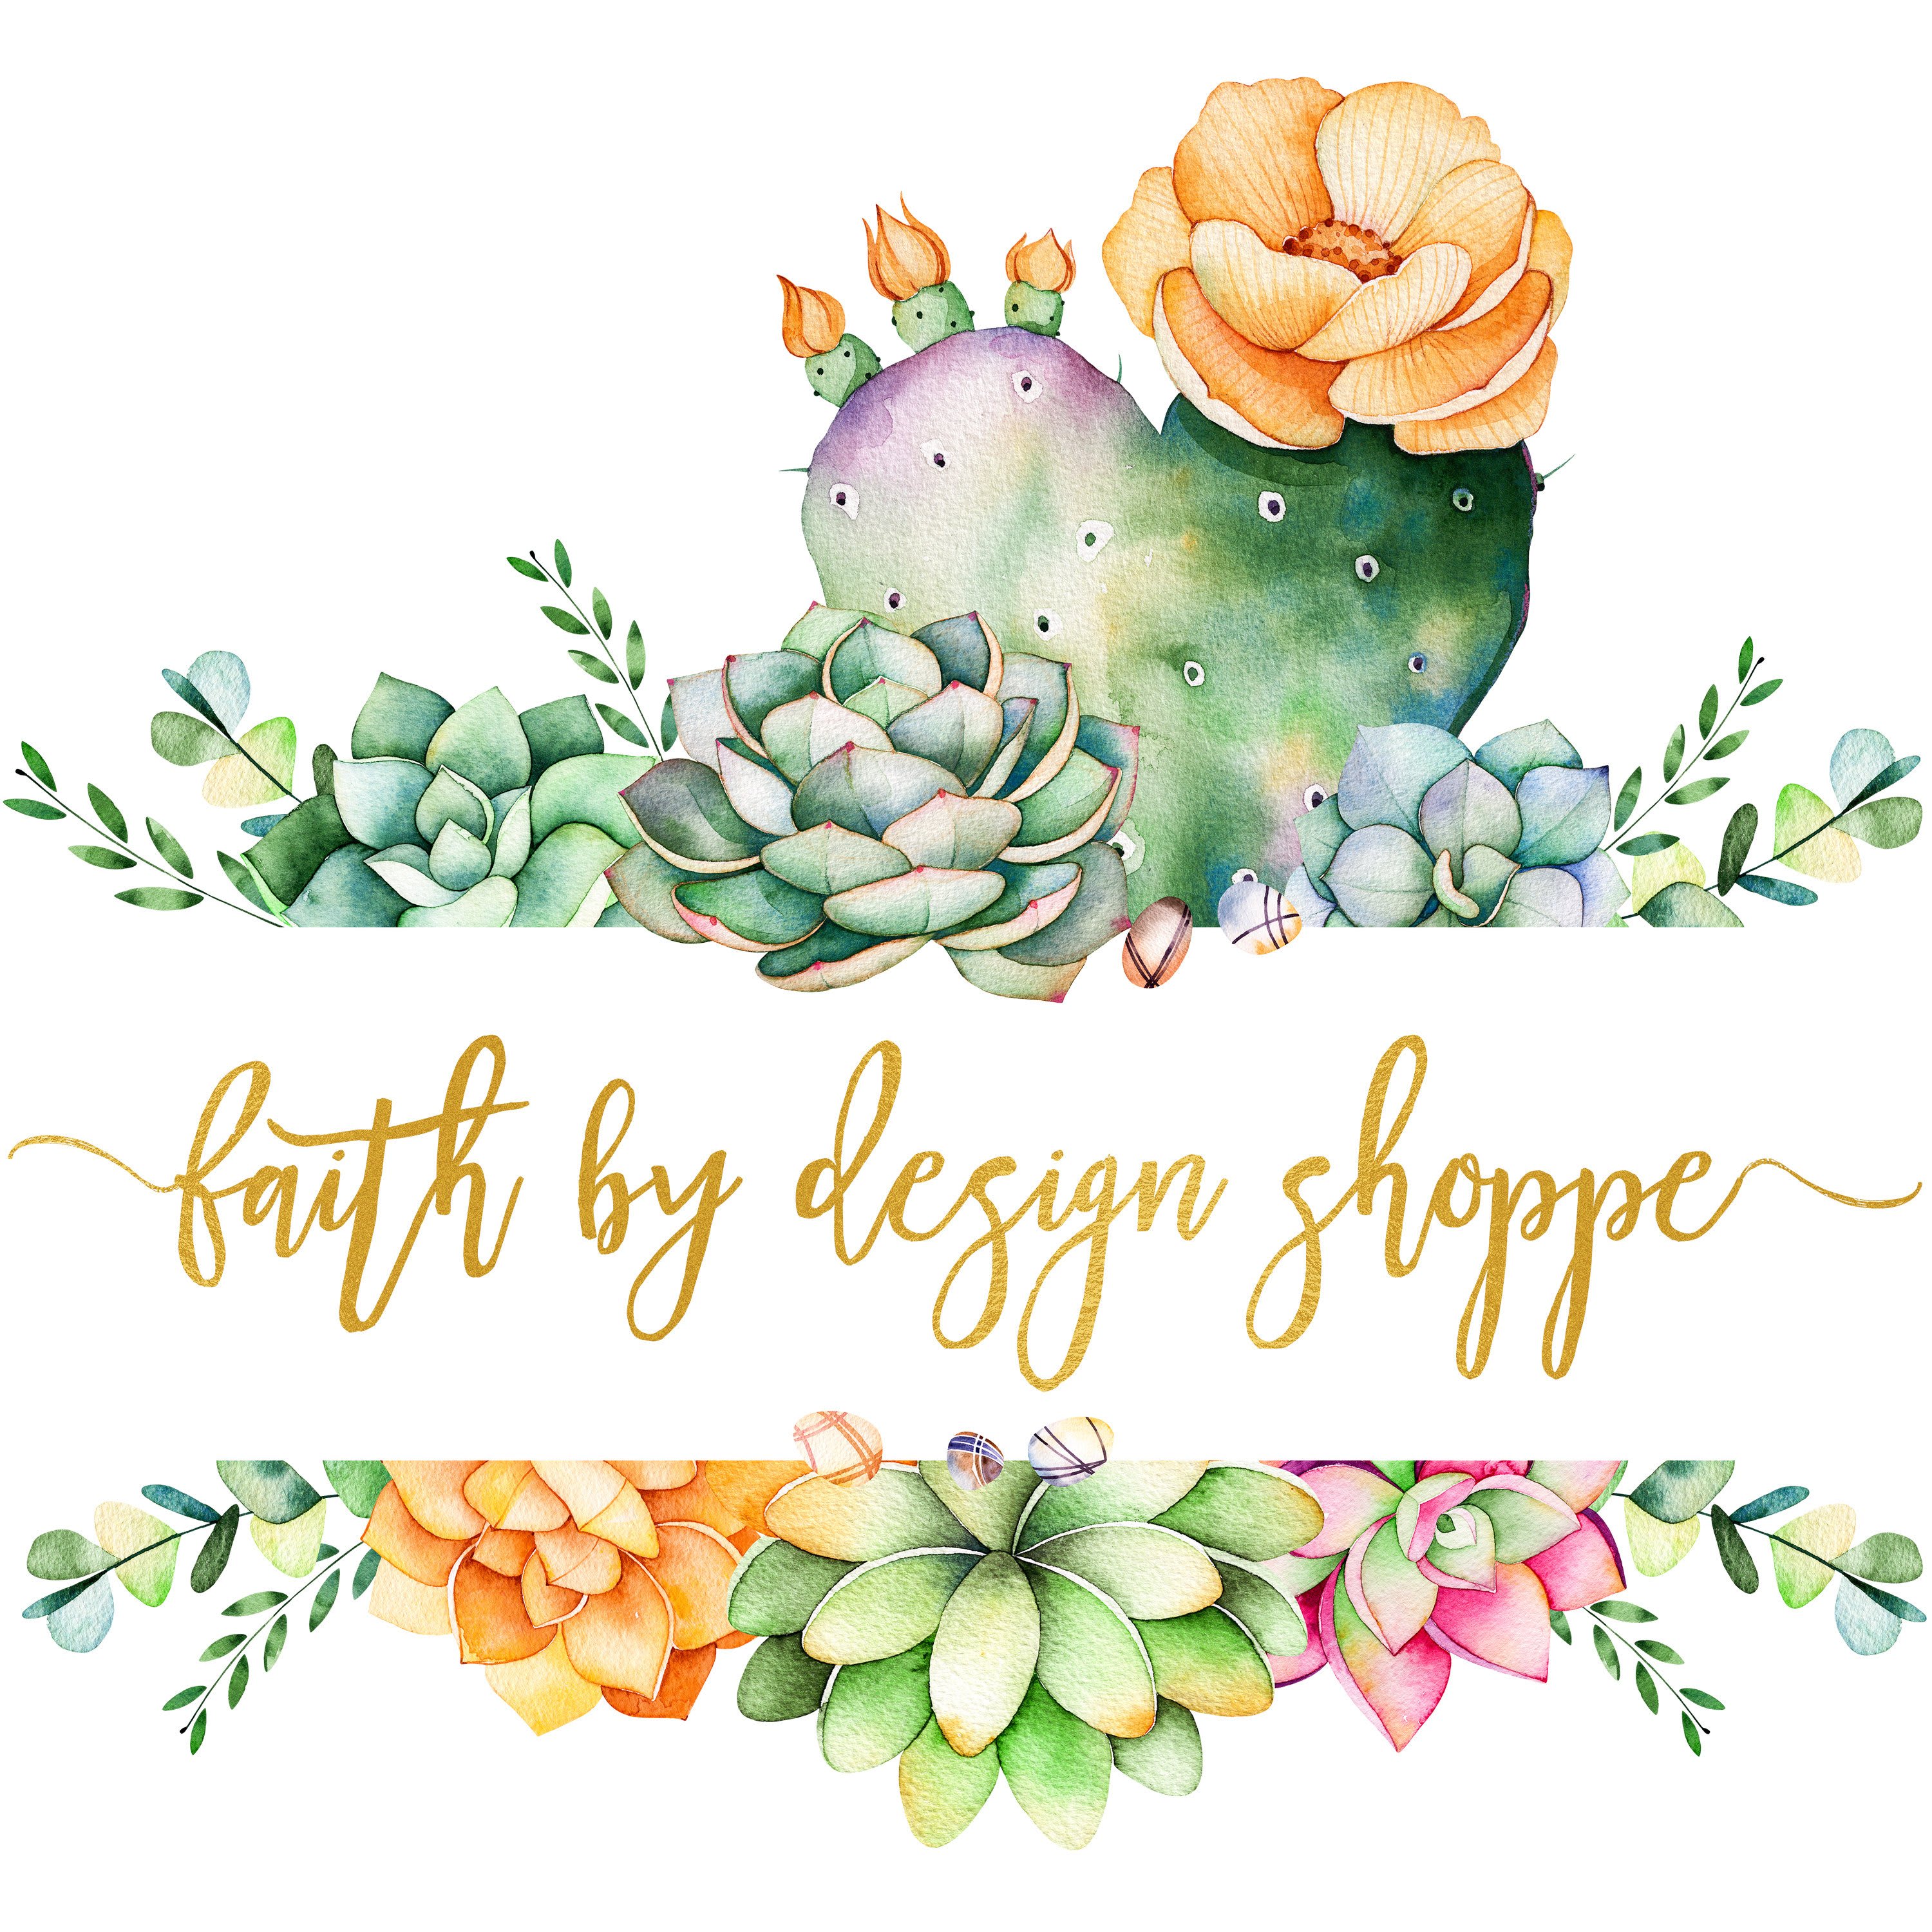 Faith By Design Shoppe